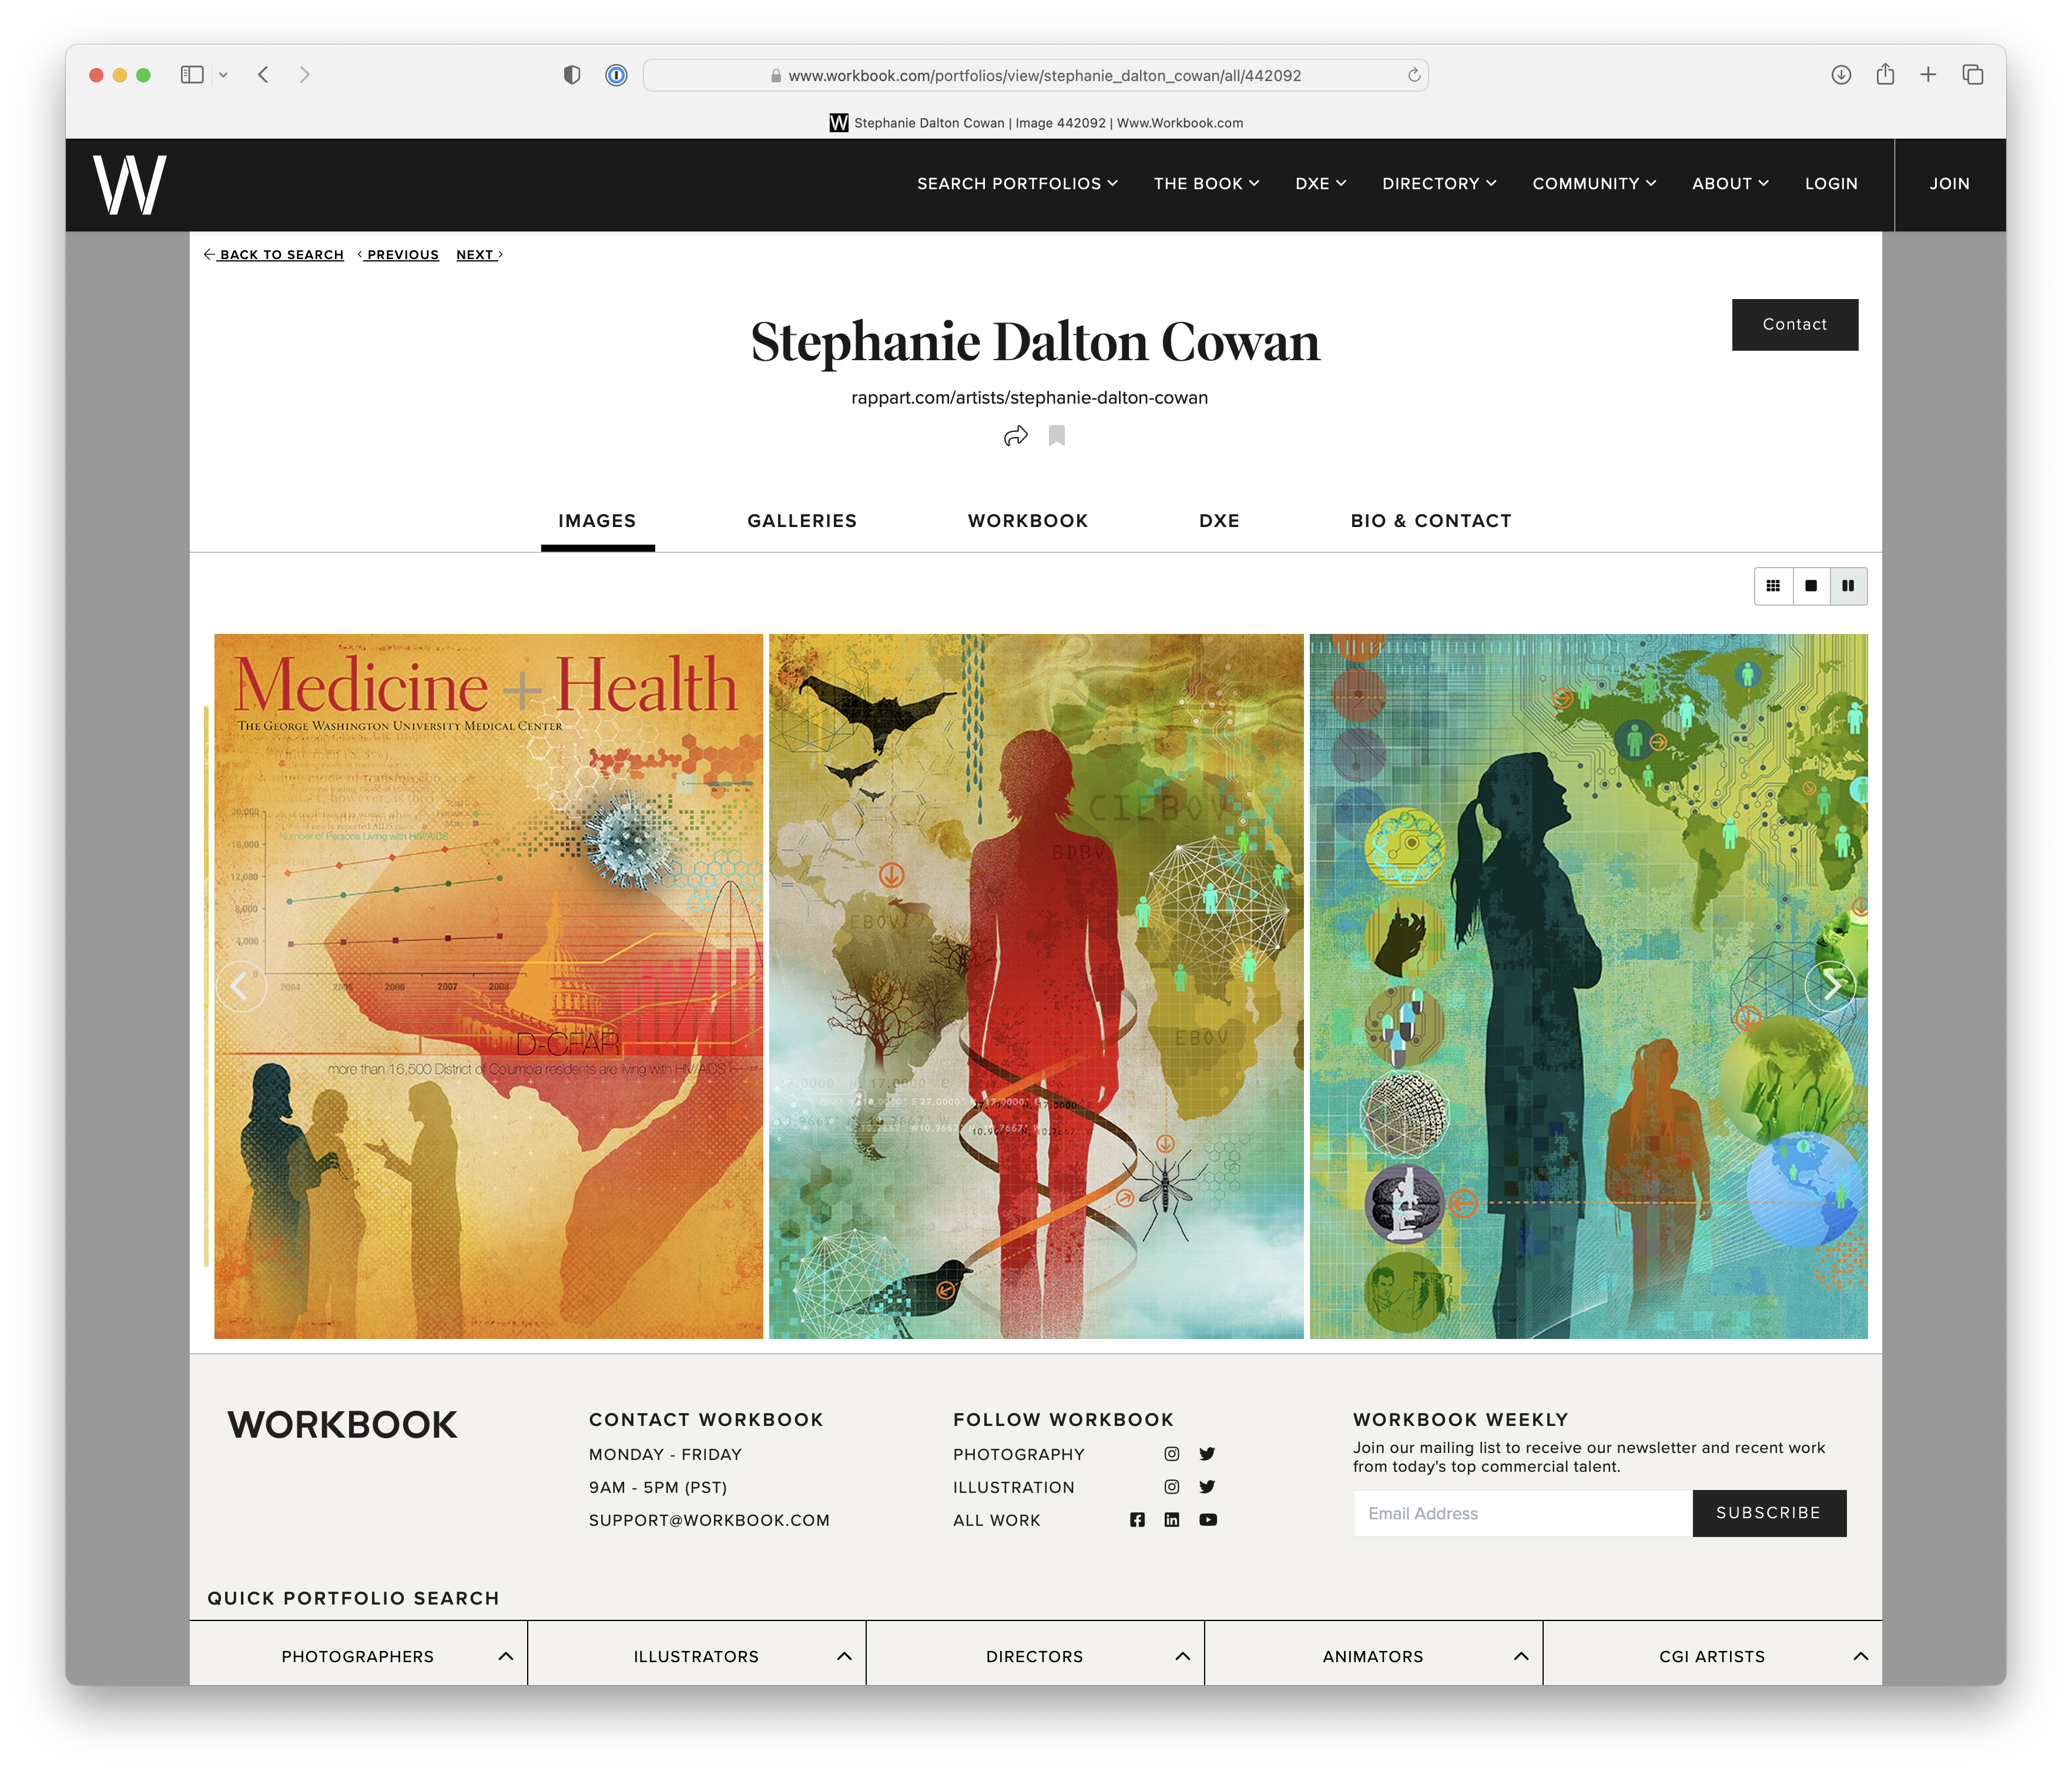 Stephanie Dalton Cowan Workbook Portfolio